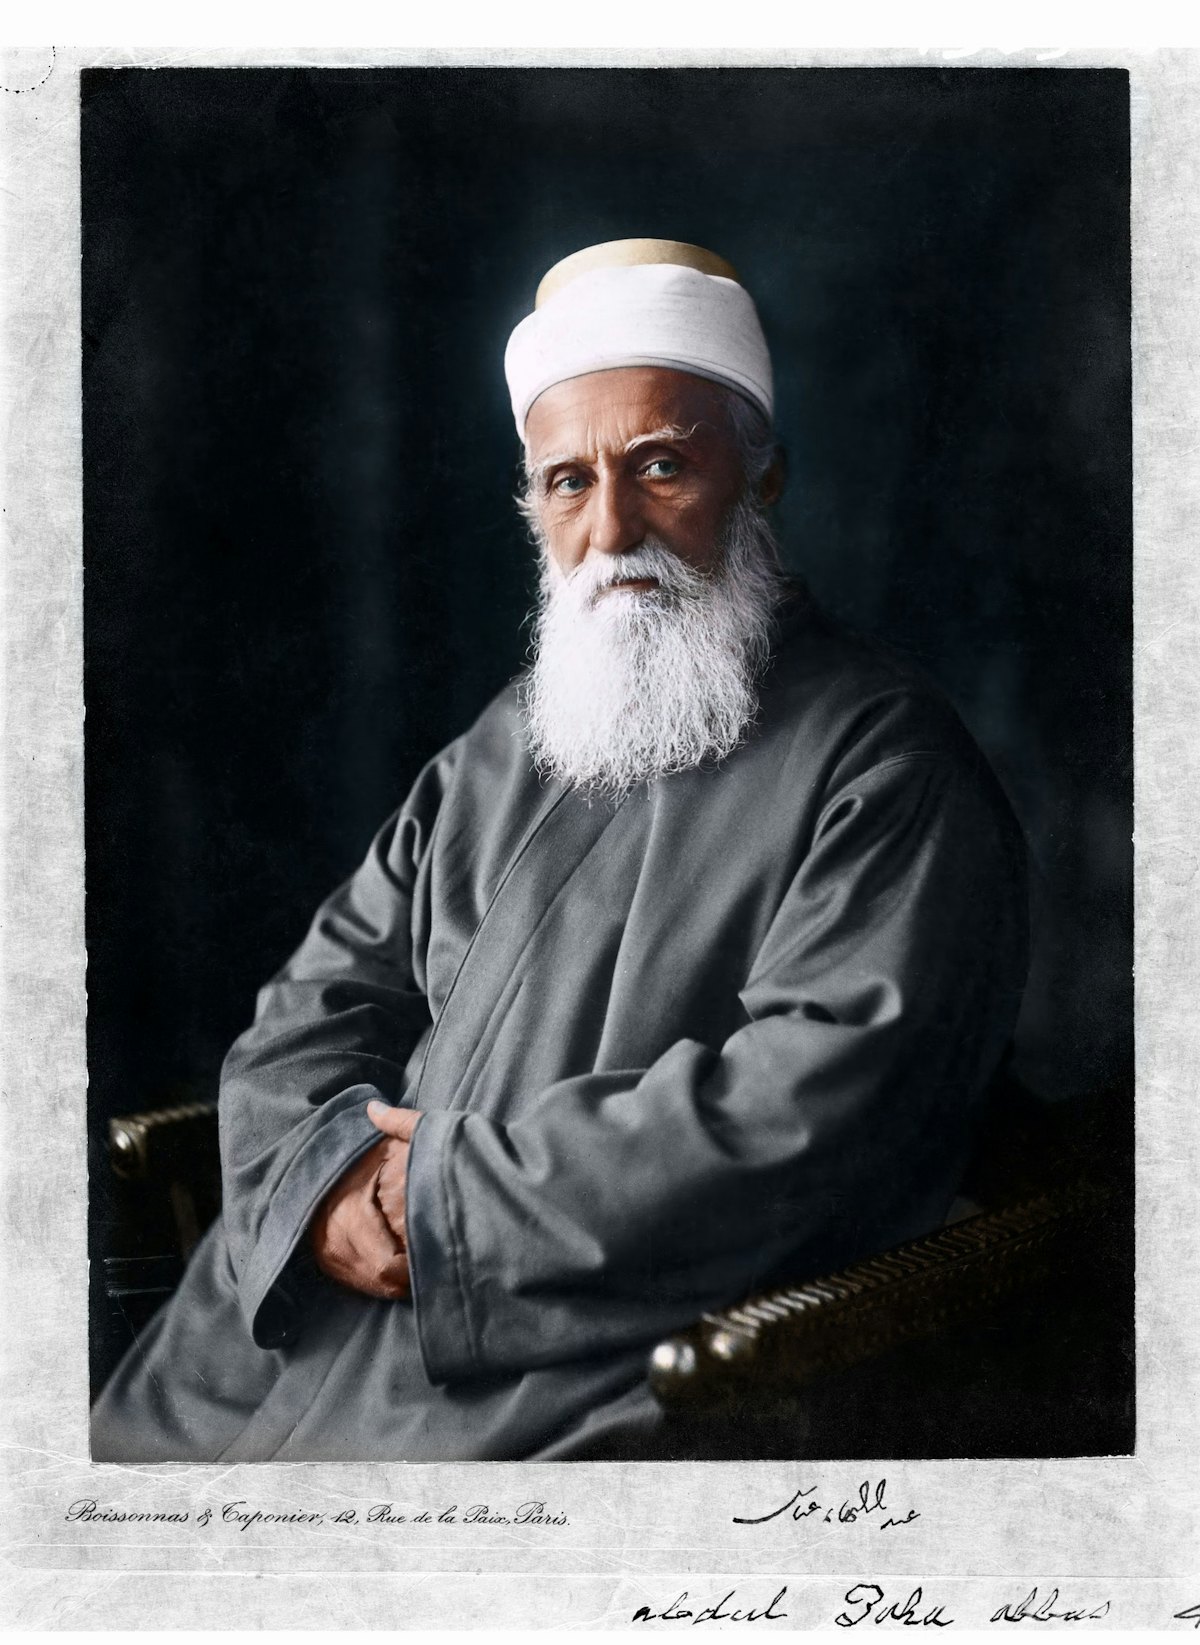 Se ha añadido recientemente un retrato coloreado de ‘Abdu’l-Bahá tomado en París (Francia) en octubre de 1911